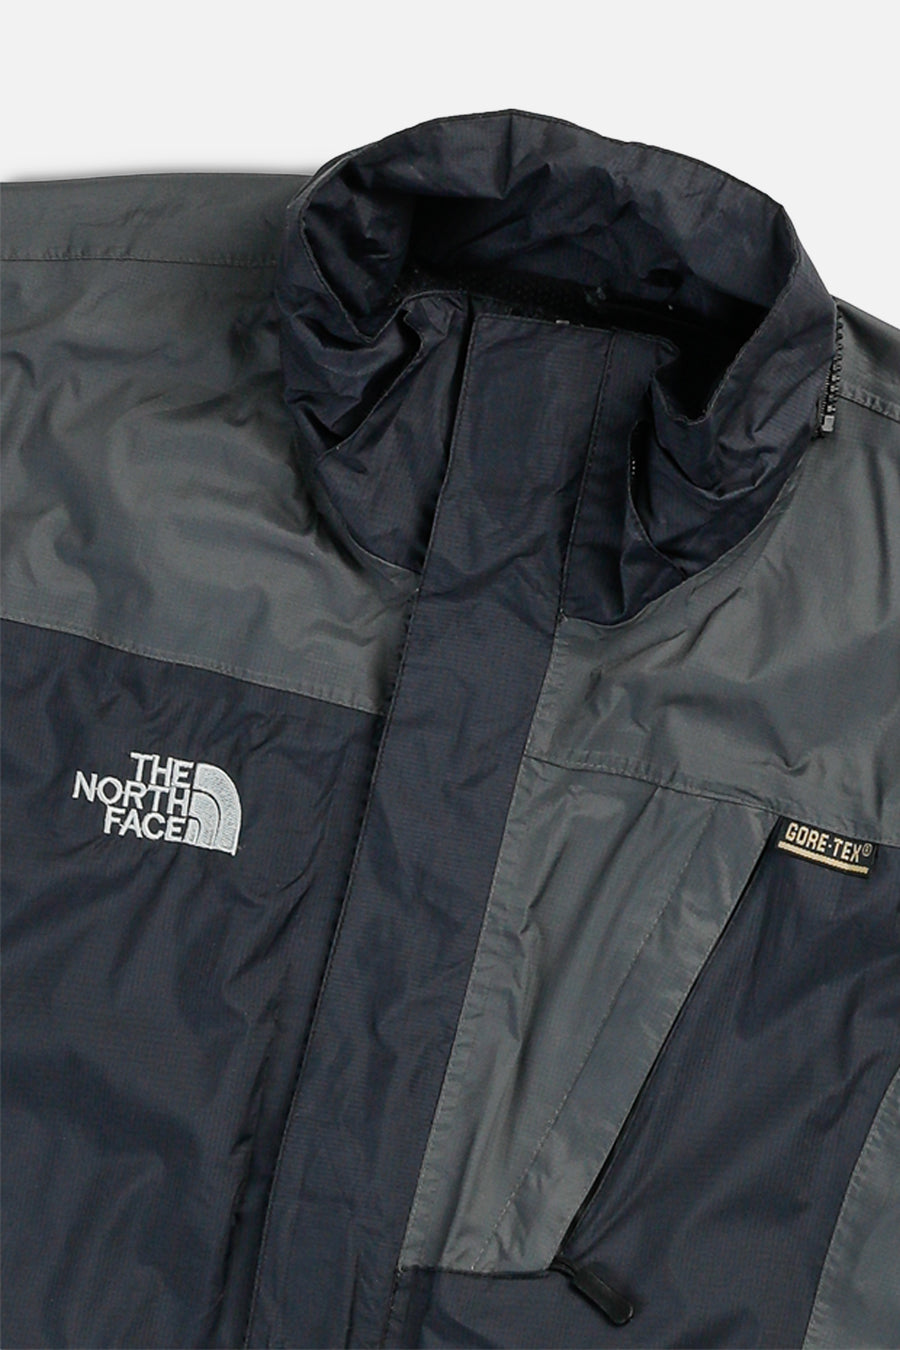 Vintage North Face Jacket - M